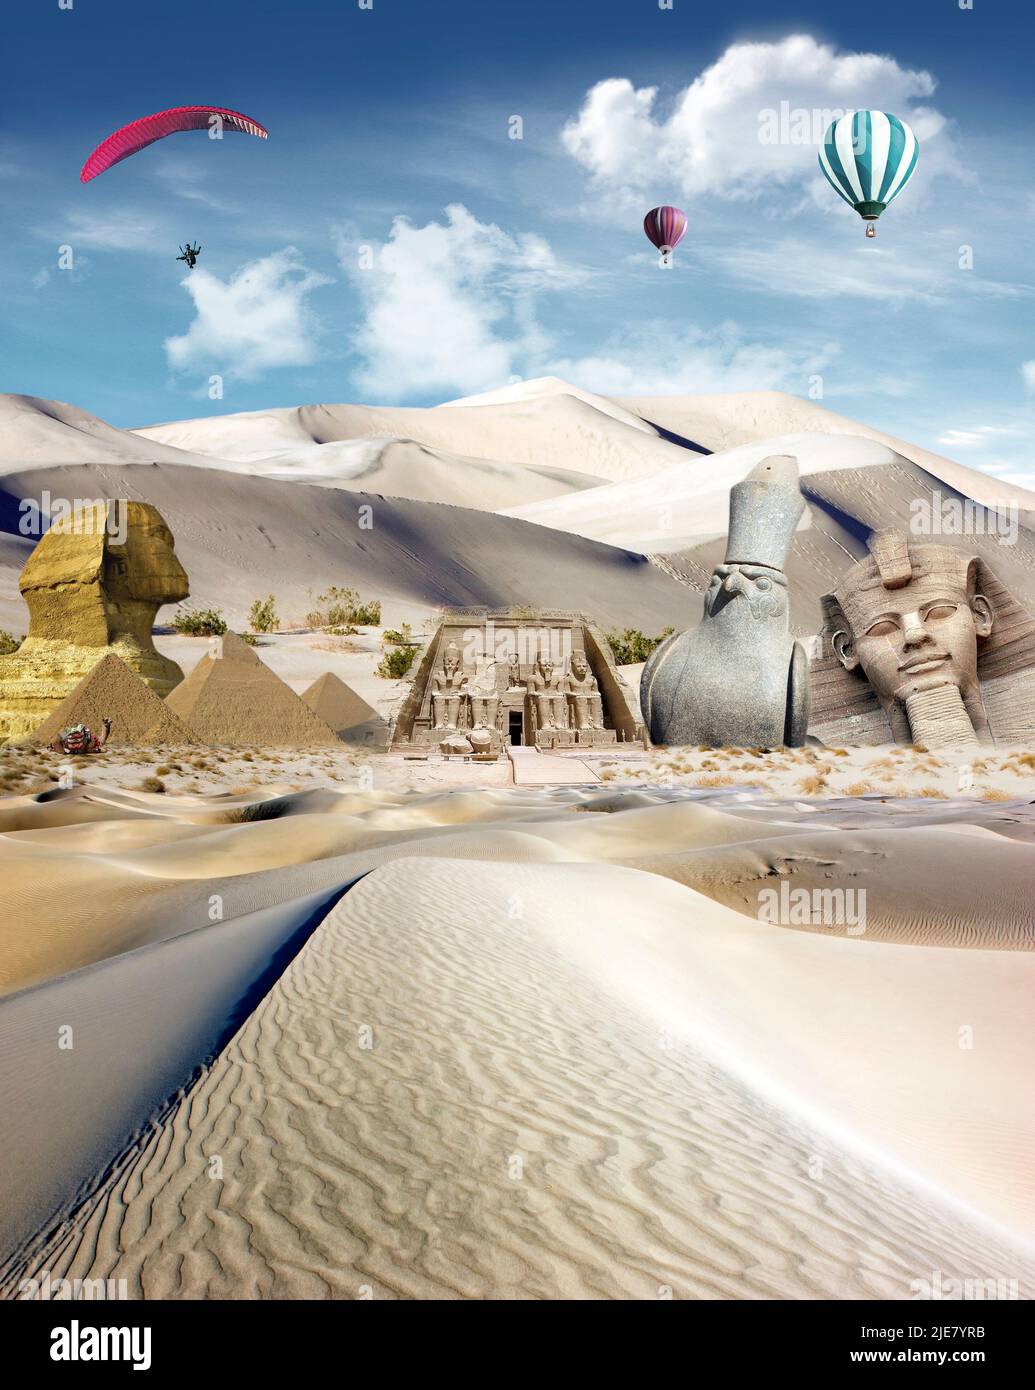 Attrazioni egiziane nel deserto con i palloni ad aria calda e il parapendio vola nel cielo Foto Stock